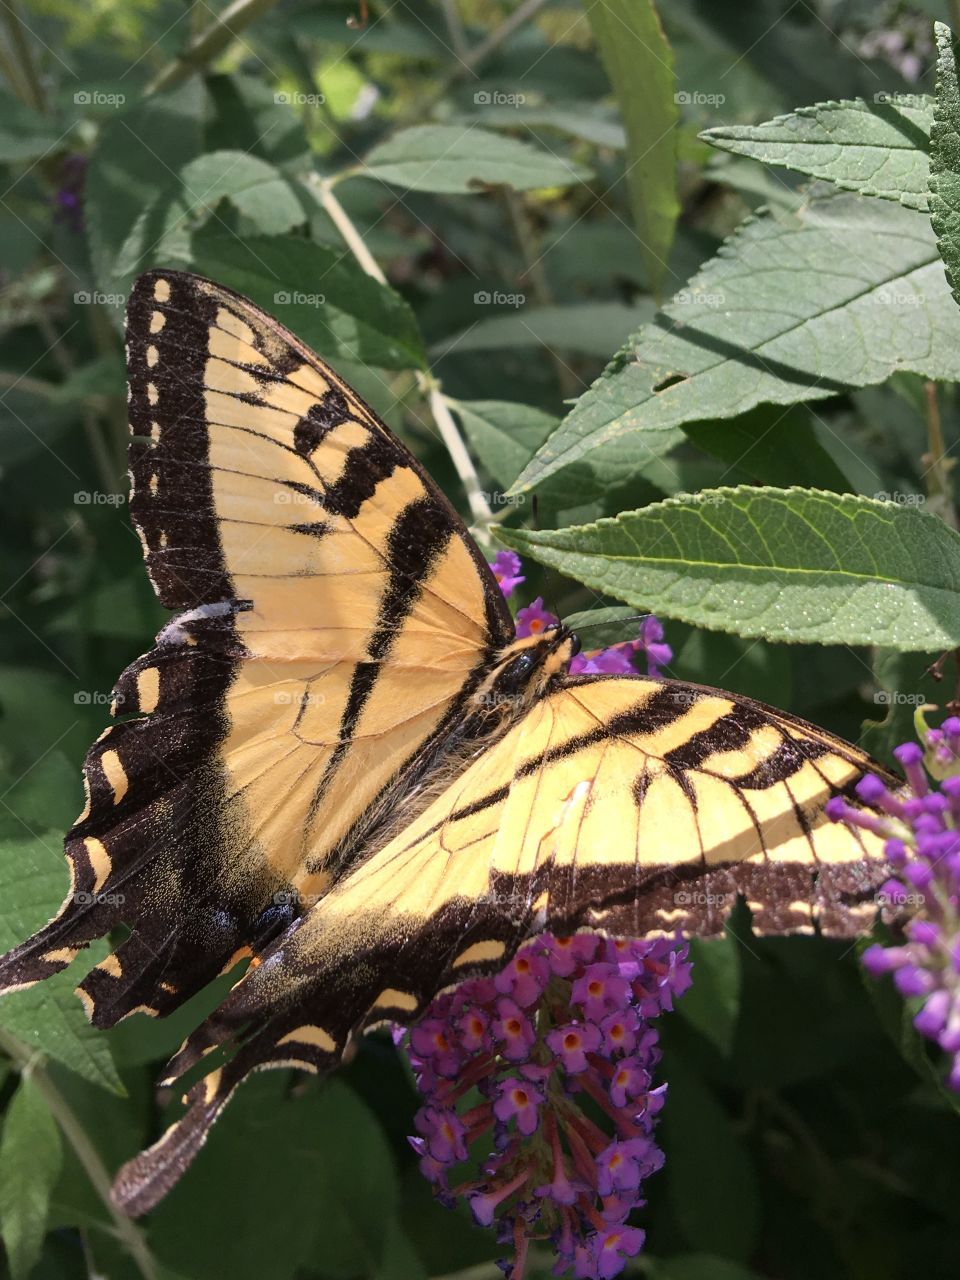 Monarch Butterfly on Butterfly Bush